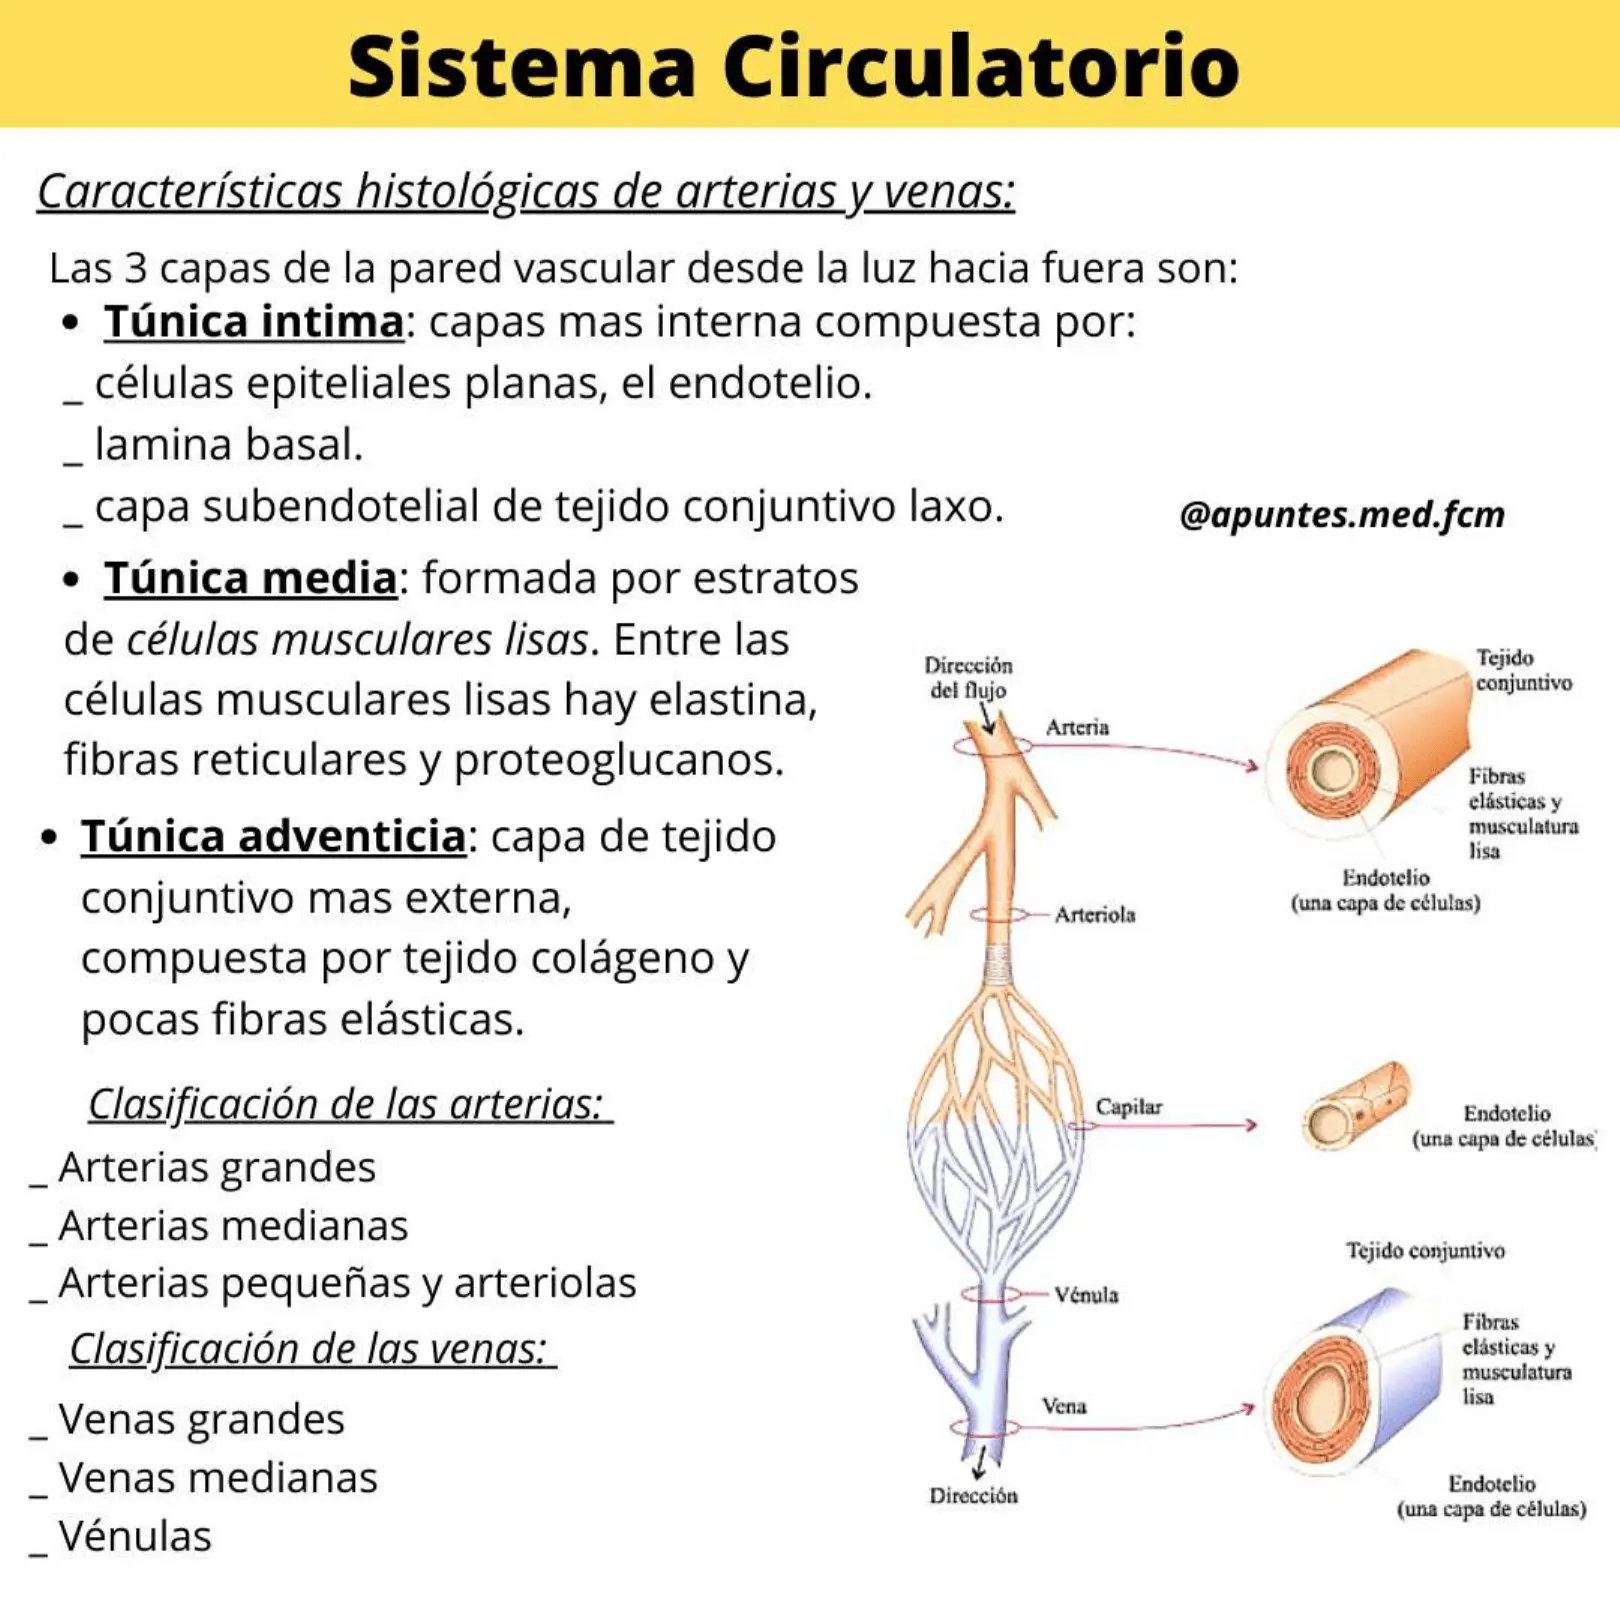 sistema circulatorio resumen - Cuáles son las partes del sistema circulatorio y sus funciones